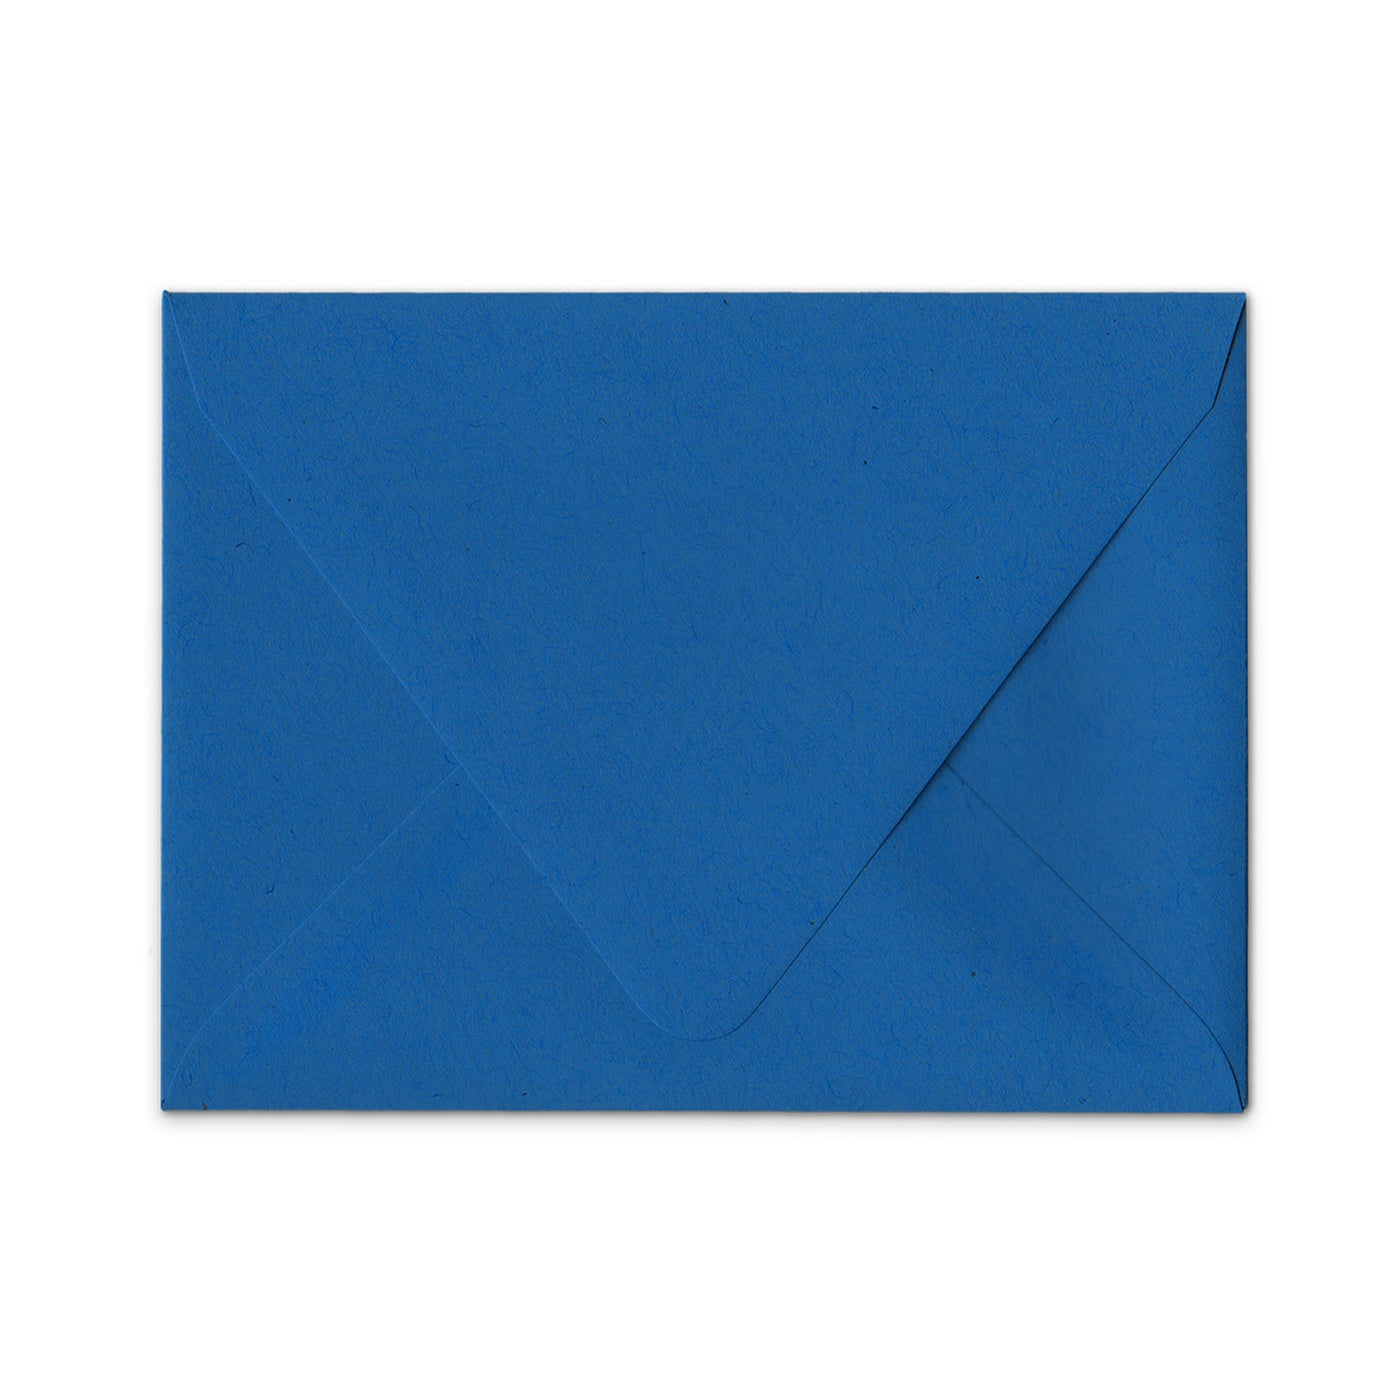 Royal blue Euro flap envelope, beknown